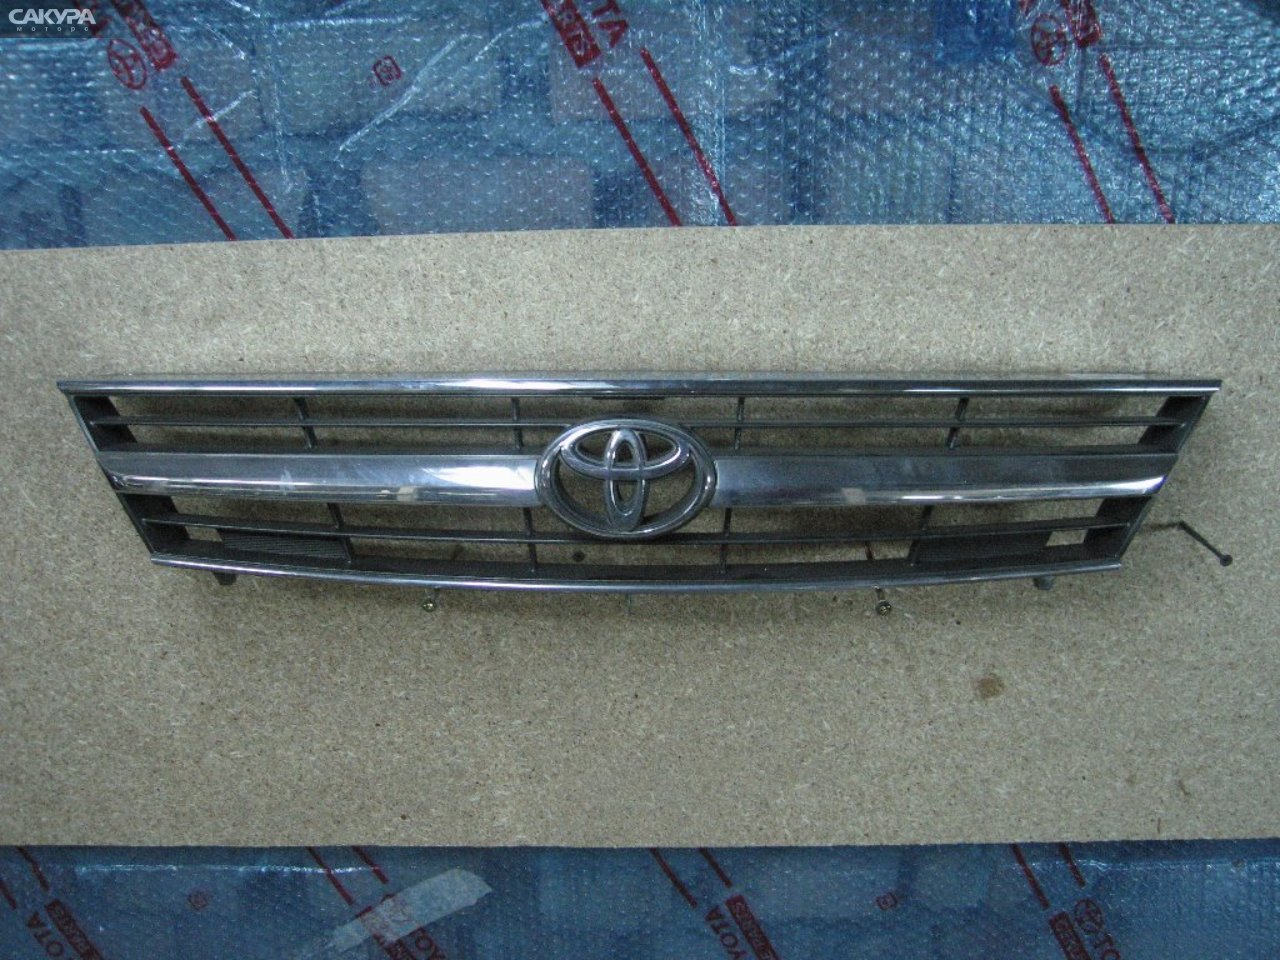 Решетка радиатора Toyota Estima Emina TCR21G: купить в Сакура Абакан.